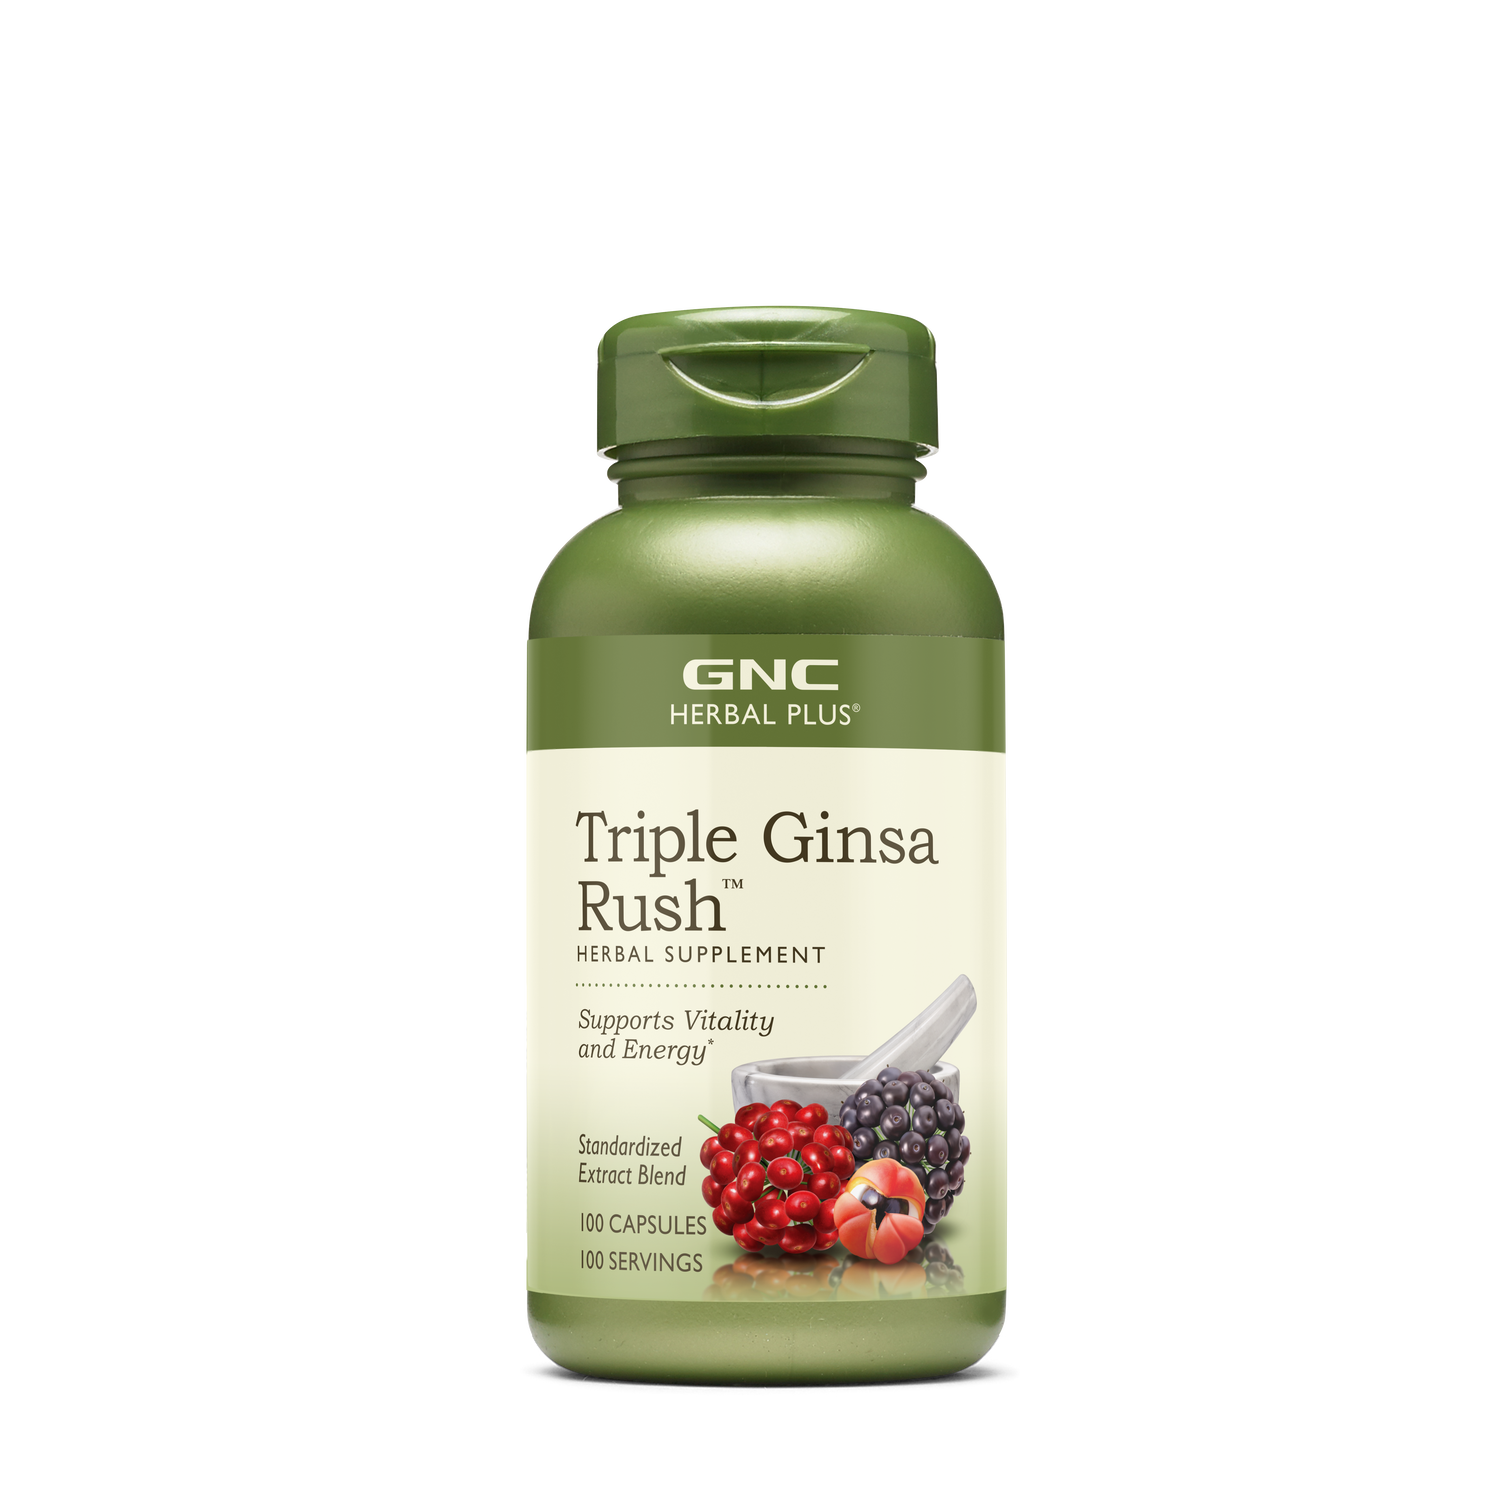 GNC Herbal Plus Triple Ginsa Rush - 100 Capsules (100 Servings)